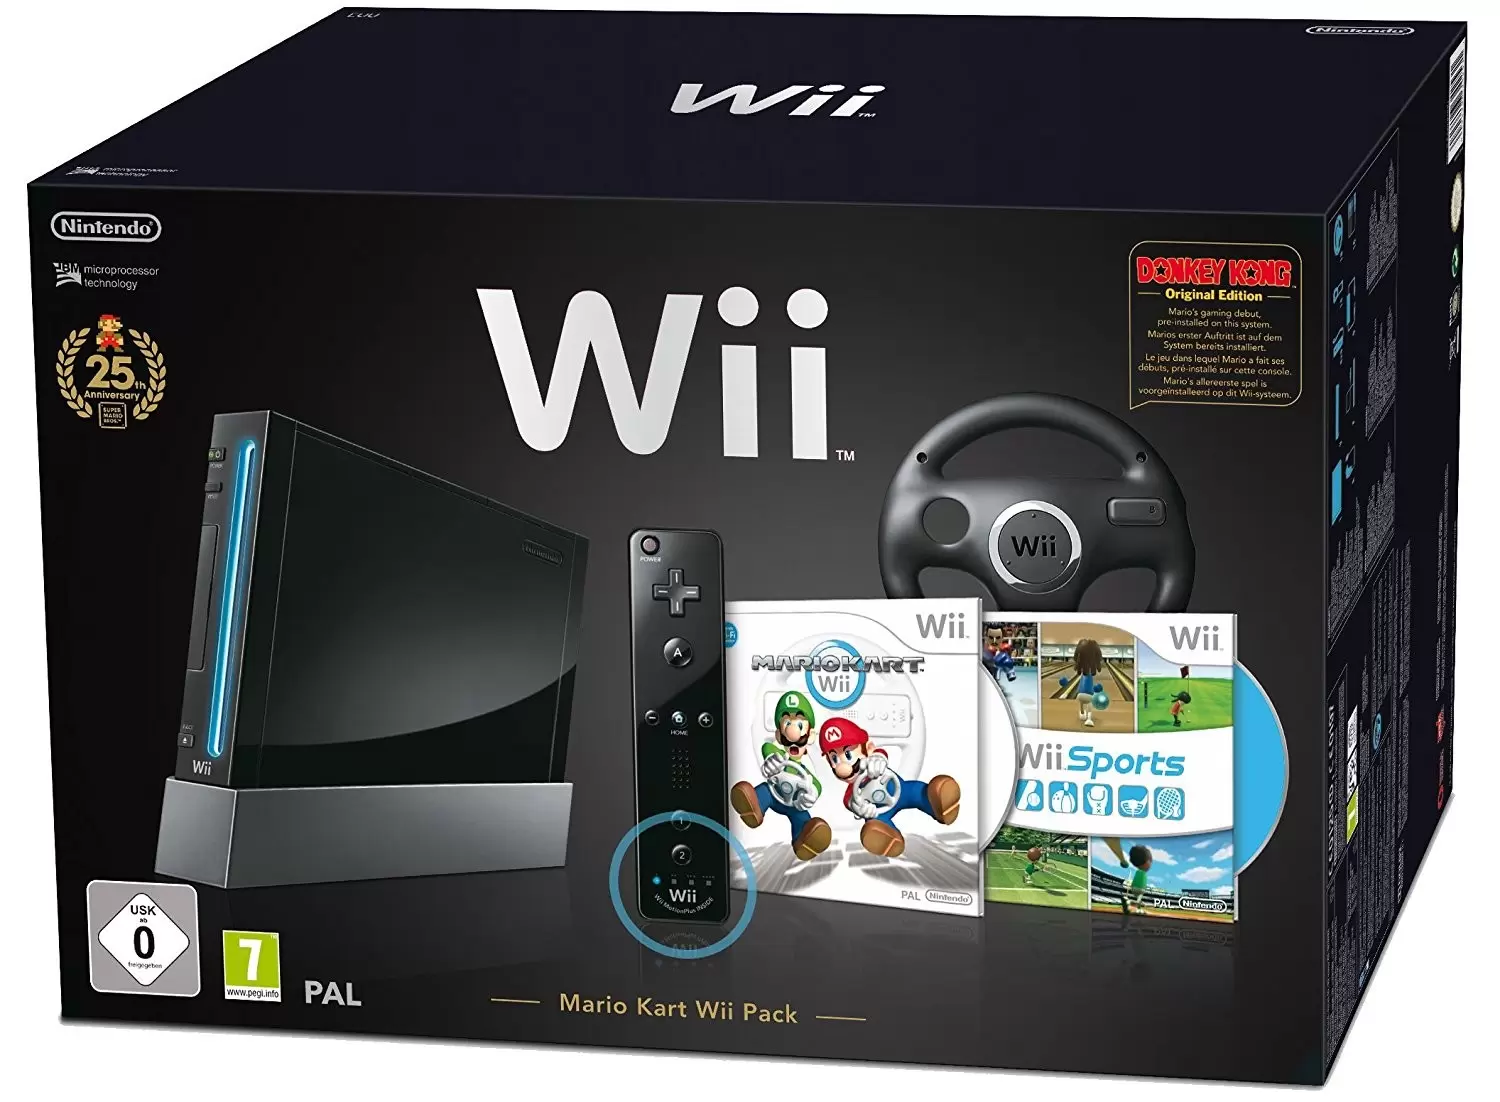 Matériel Wii - Console Wii noire + Mario kart Wii + Wii Sport